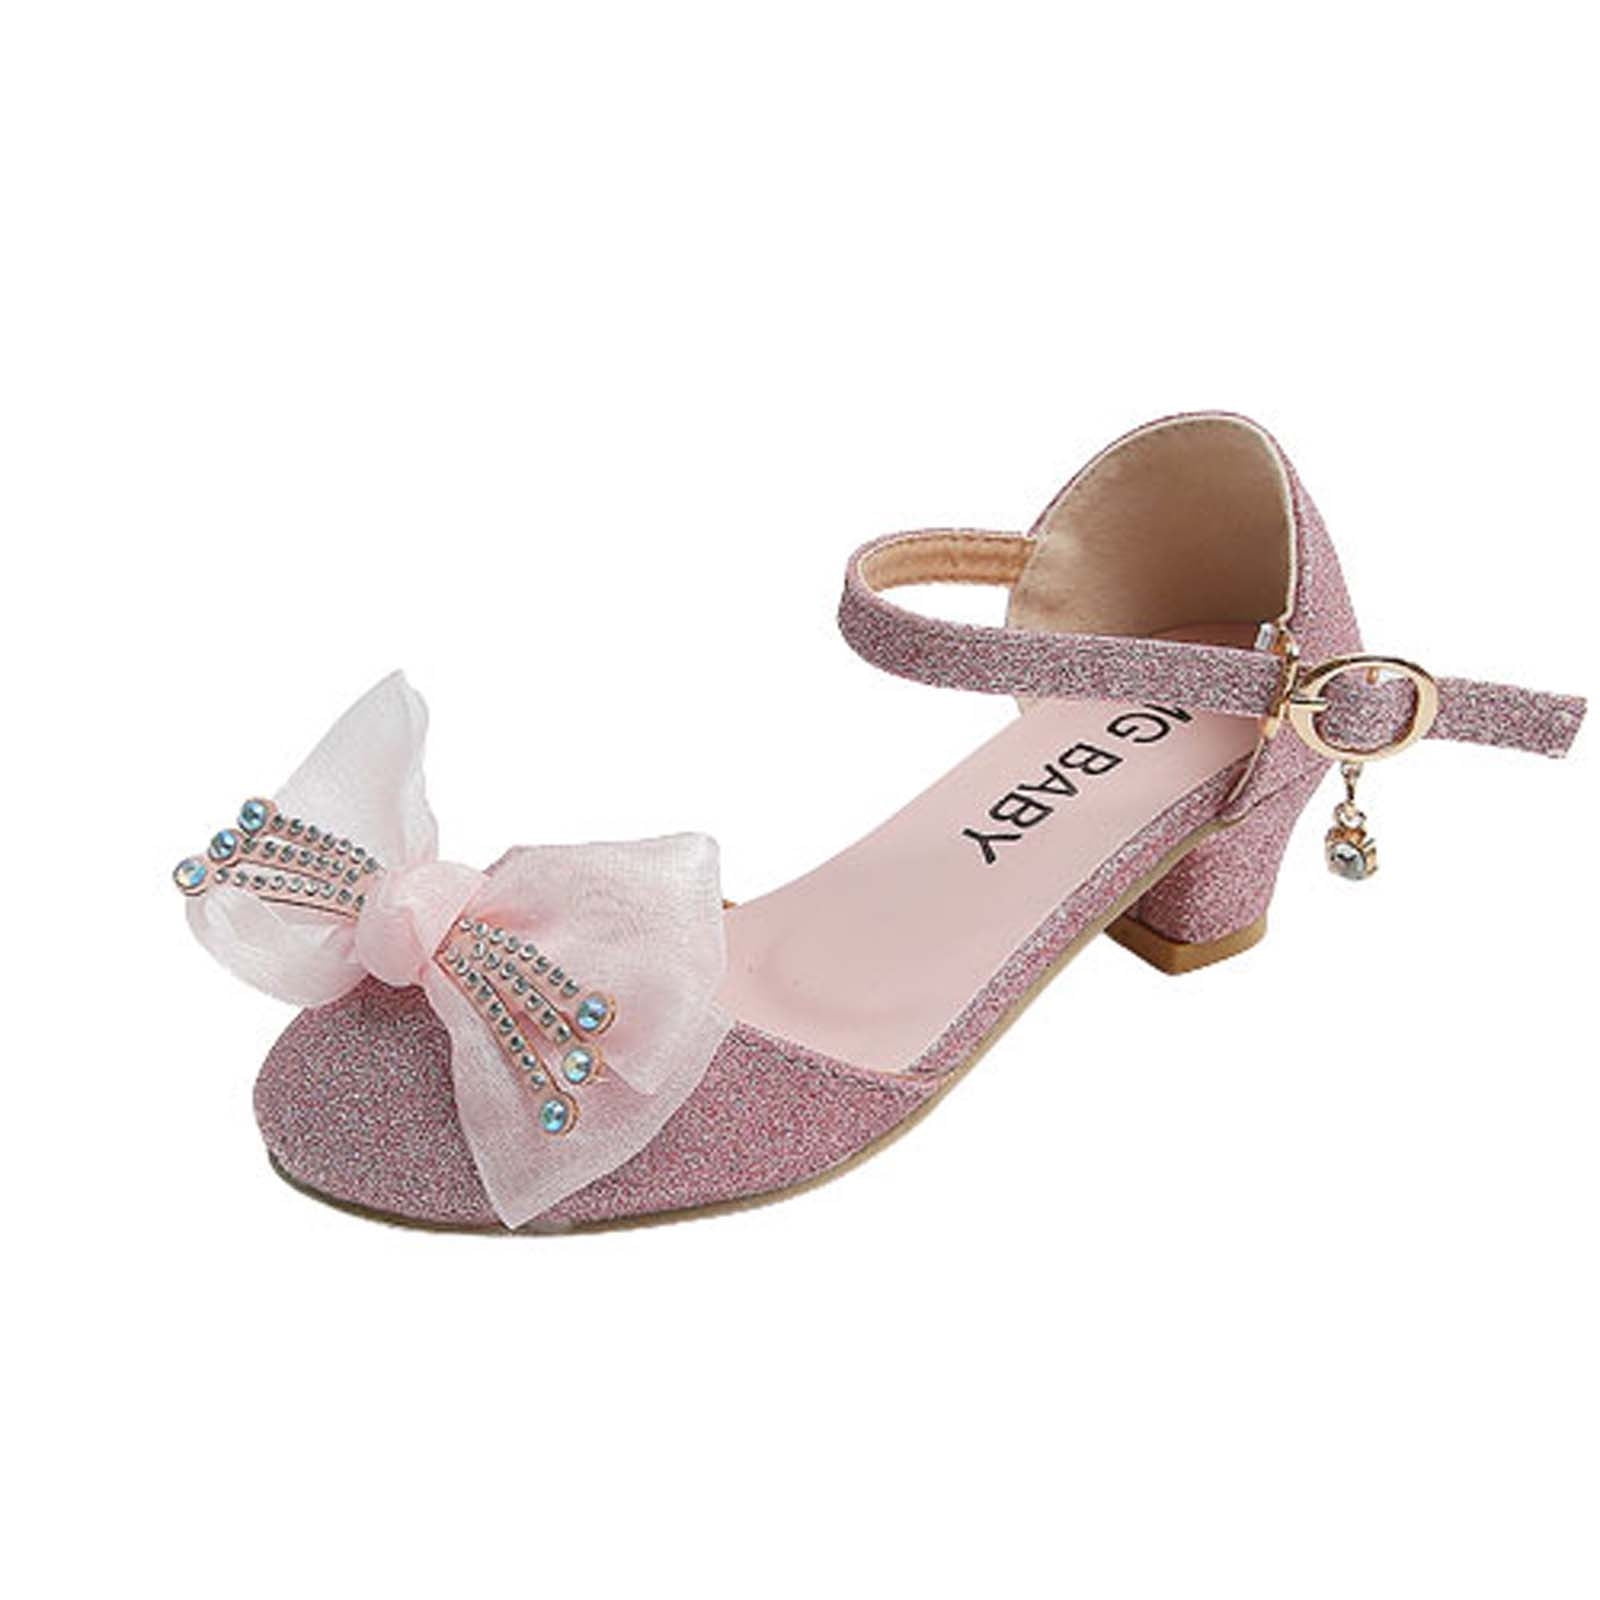 Glitter Heels / Pink Champagne Glitter Heels / Wedding Shoes / Sparkle Heels  / Sparkly Shoes / Wedding Heels / Women's Pumps / Women's Shoes - Etsy